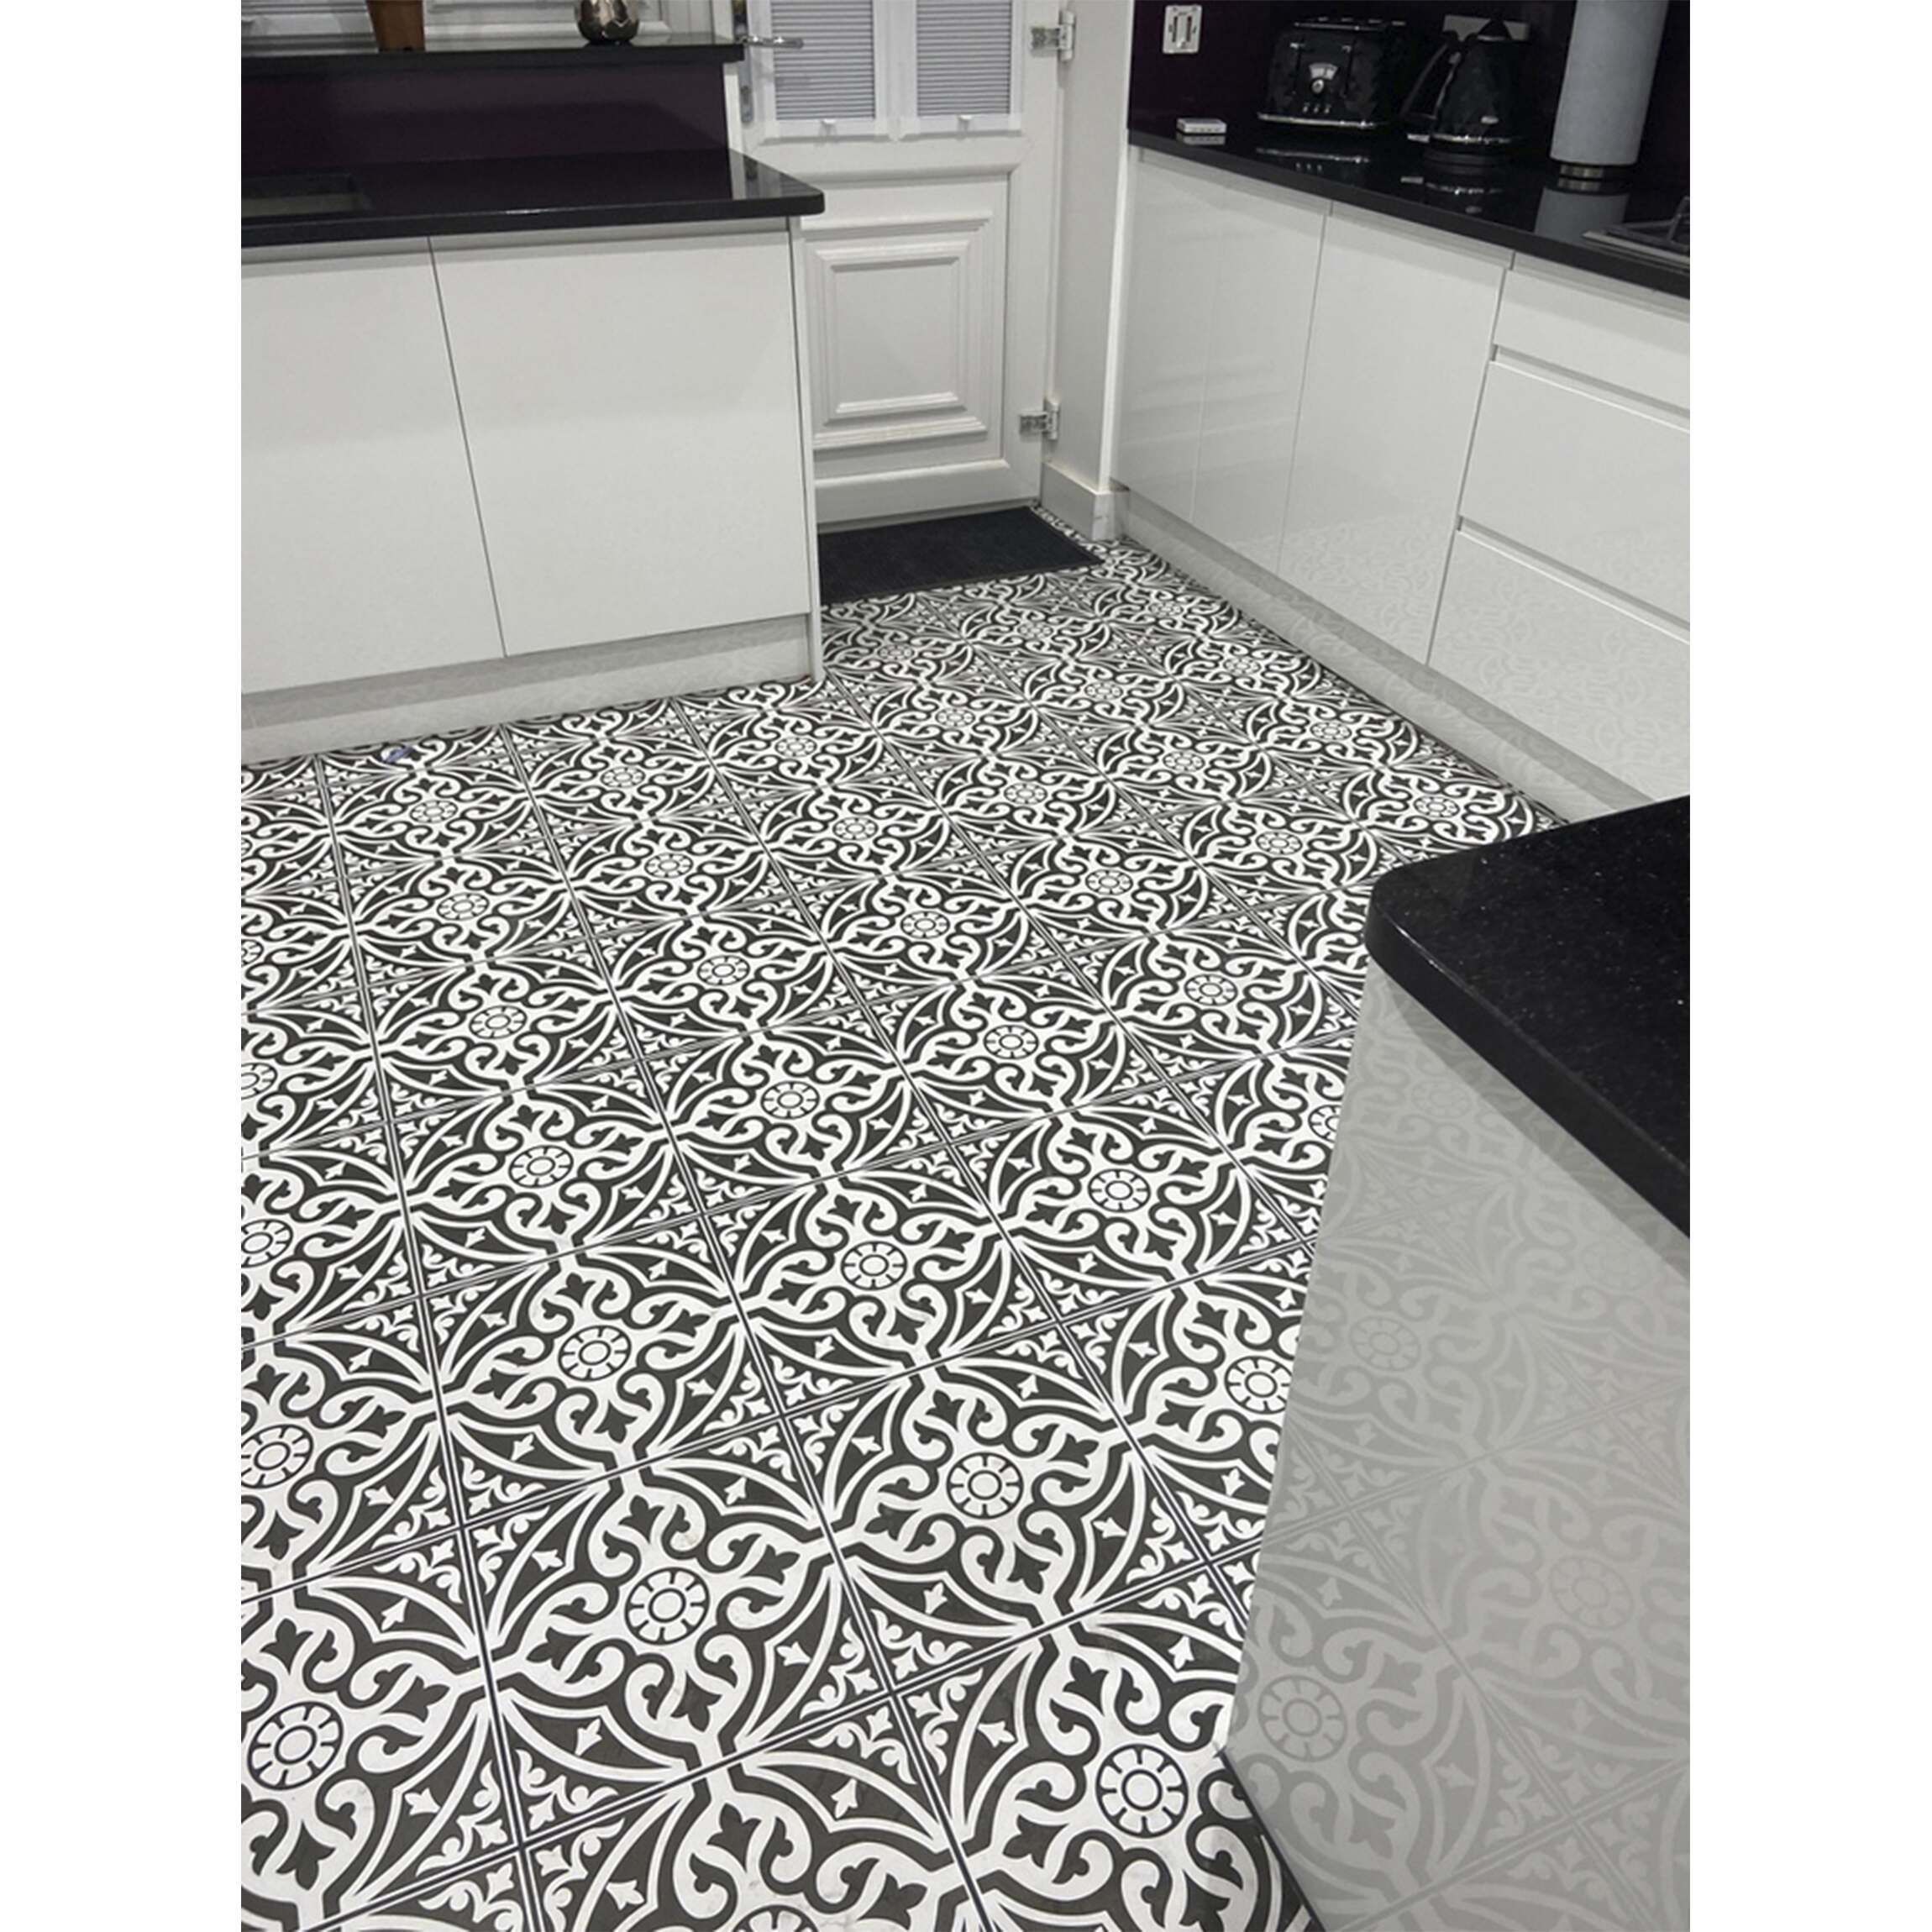 Floor Tile Tiles From Mountain, Mosaic Kitchen Floor Tiles